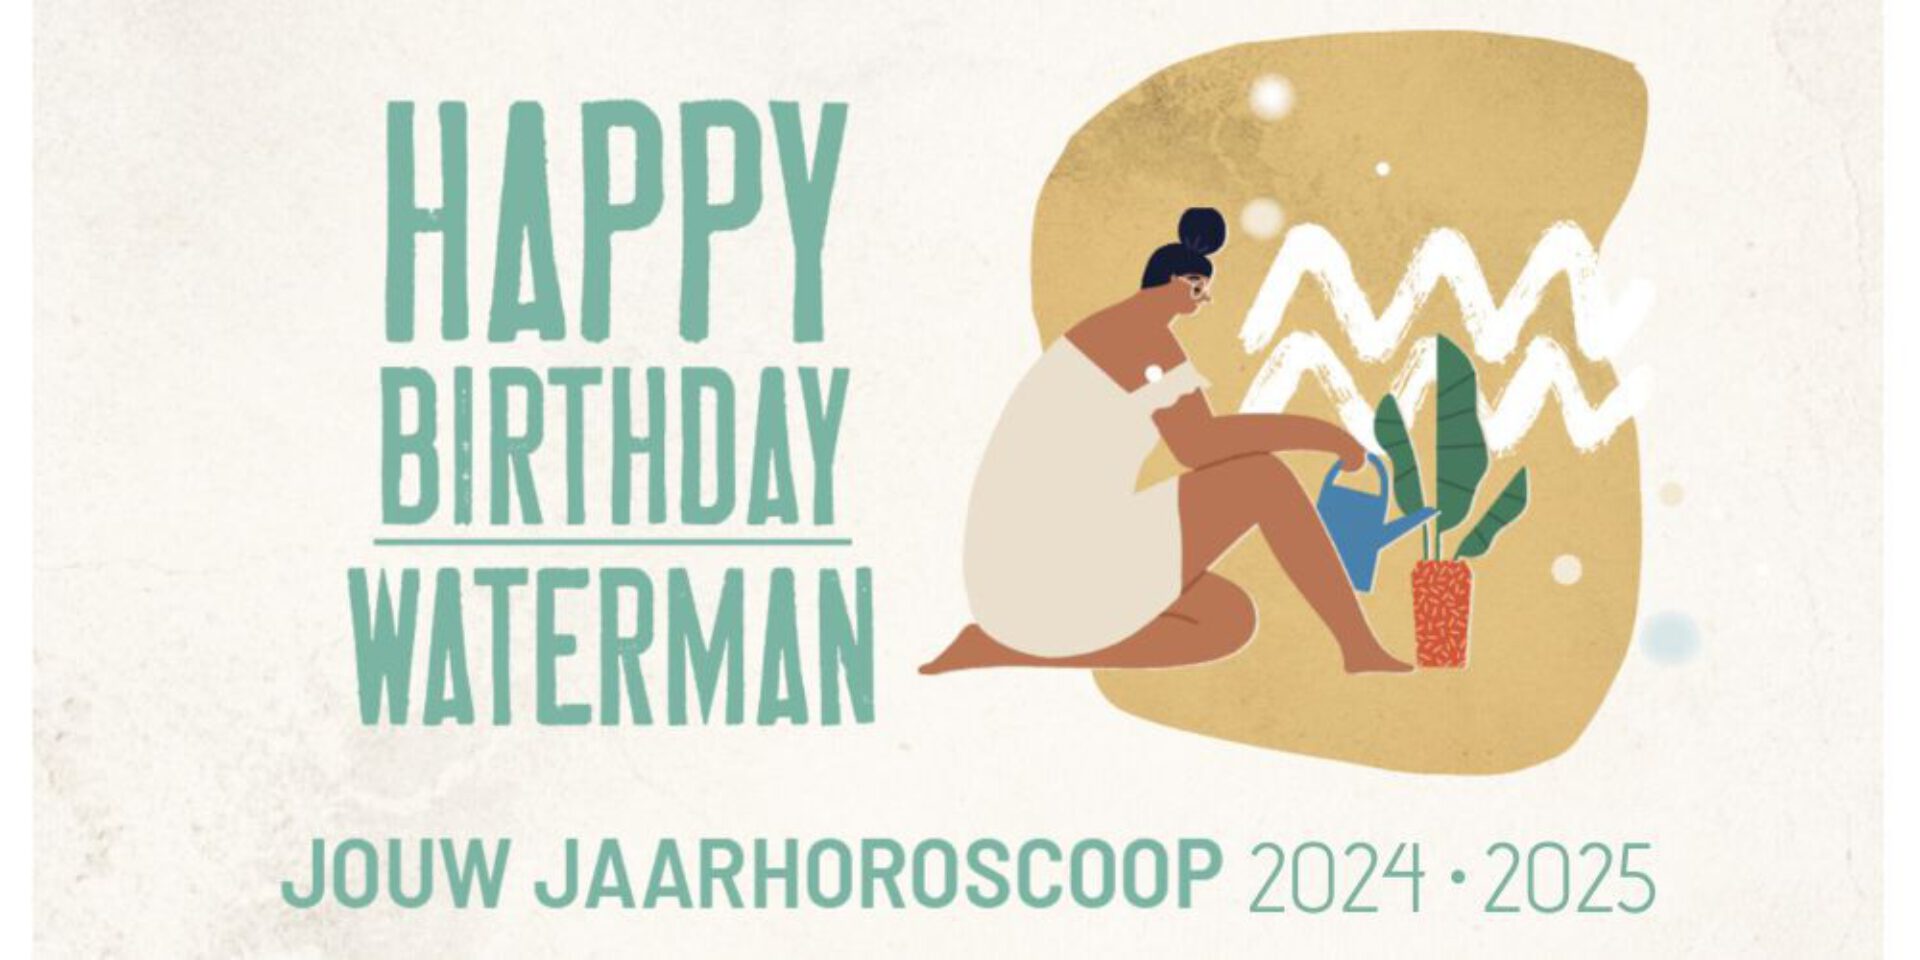 Waterman, jouw jaarhoroscoop 2024: gelukkige verjaardag!